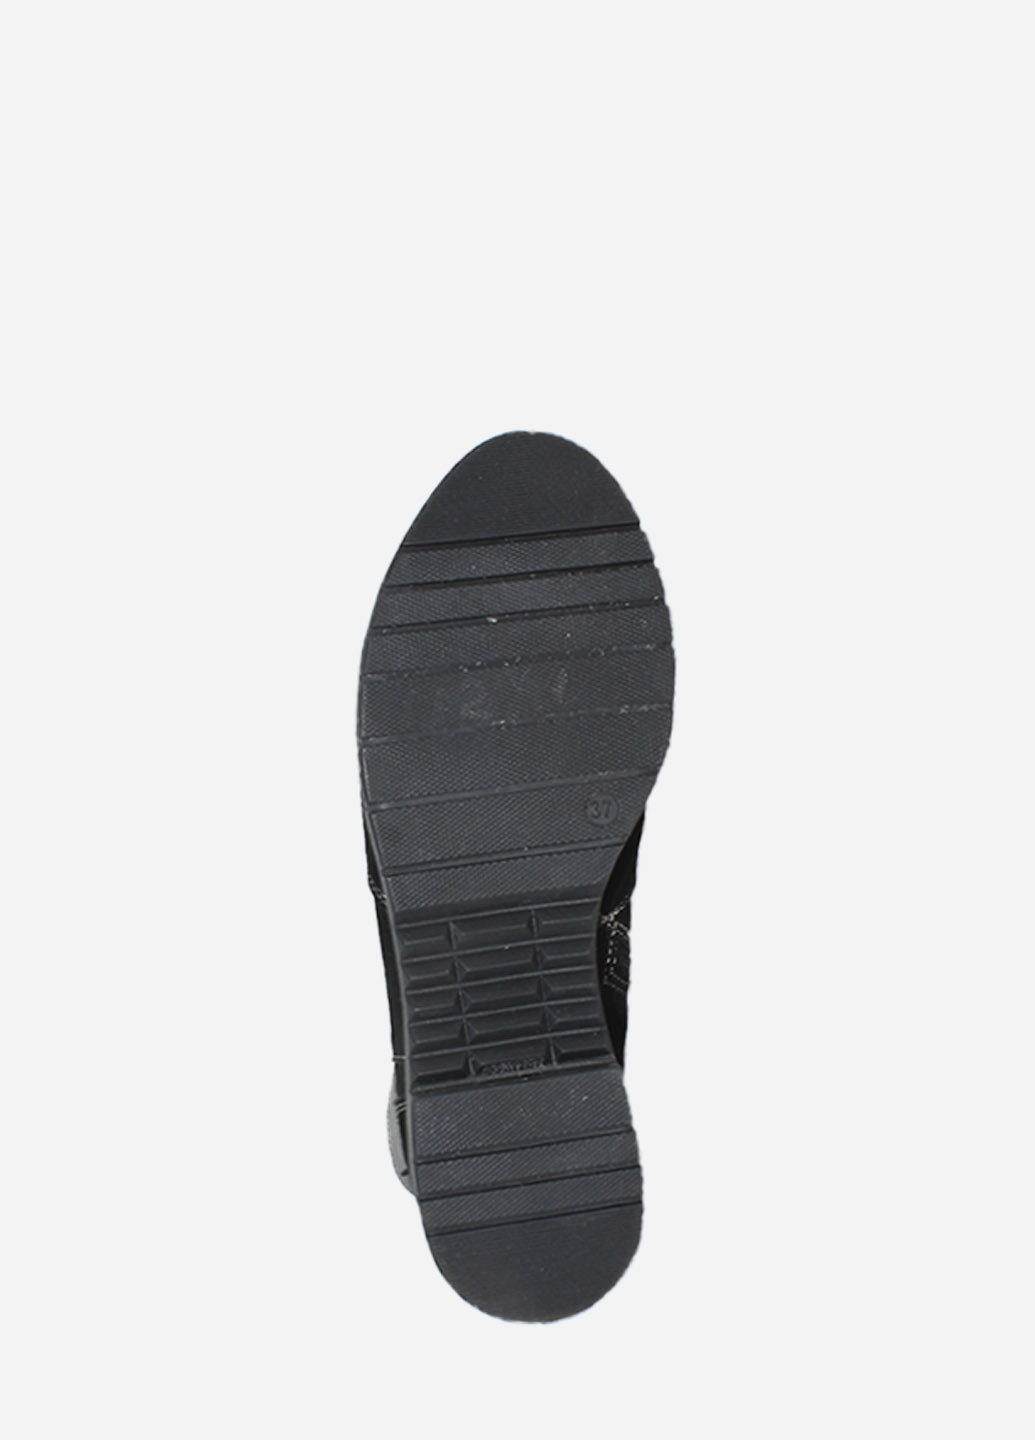 Зимние ботинки p.alina rp112-11 черный Palina из натуральной замши